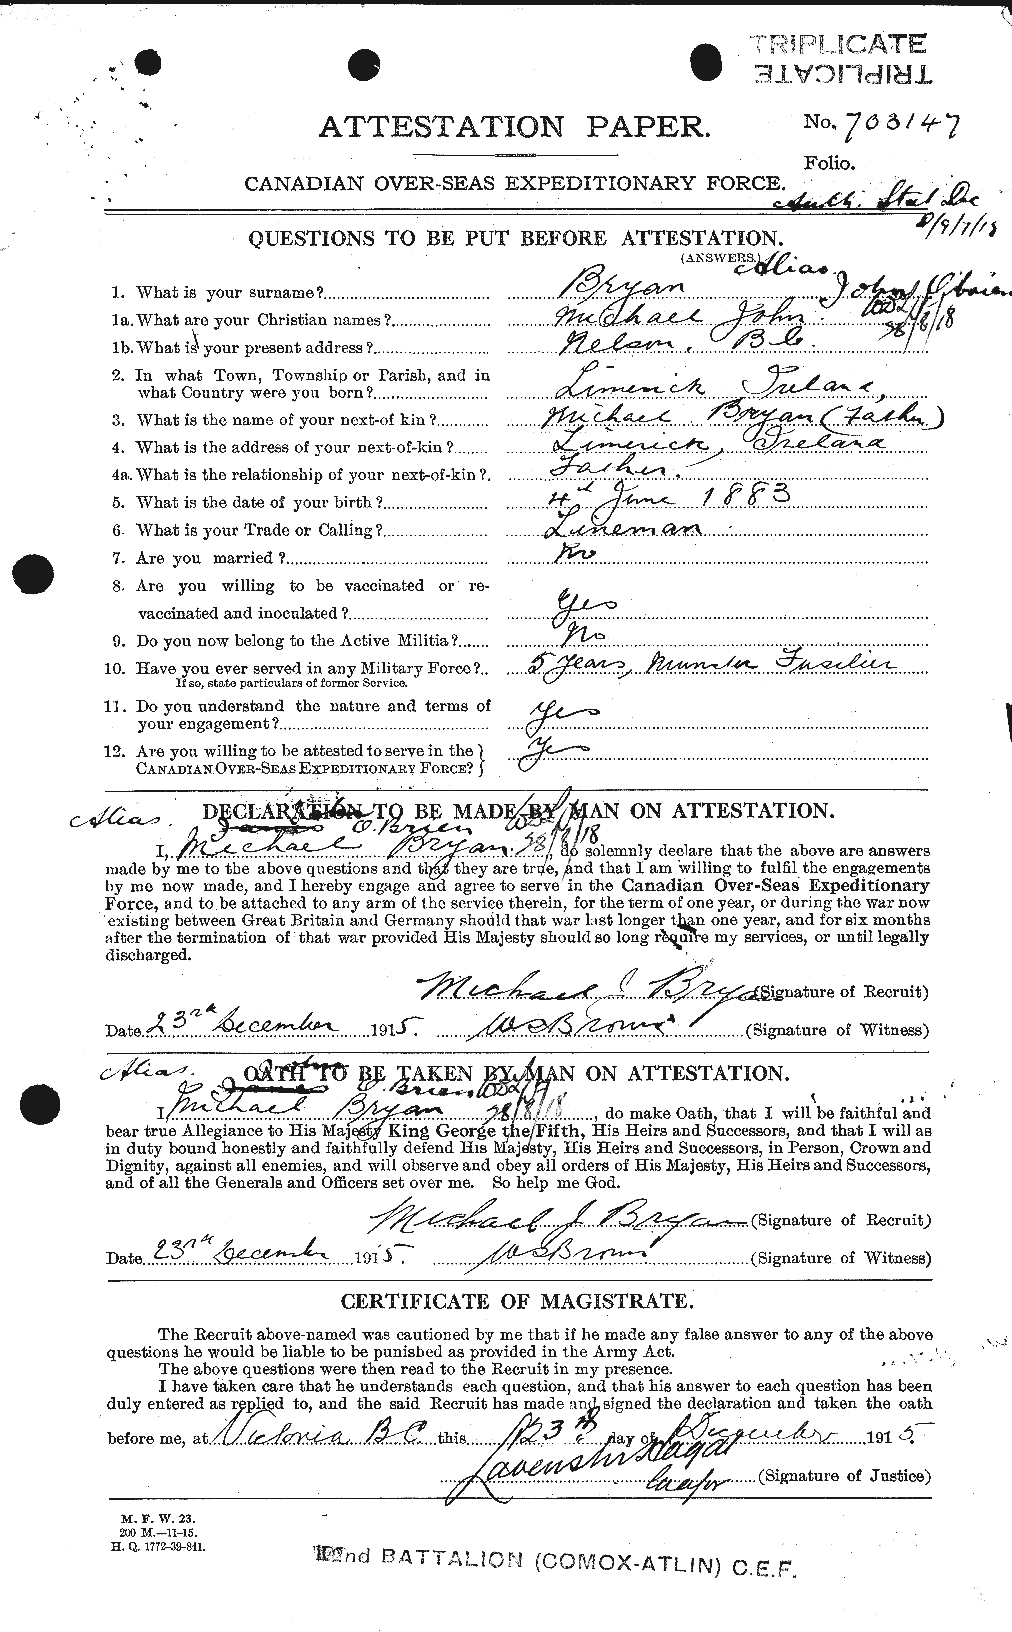 Dossiers du Personnel de la Première Guerre mondiale - CEC 554666a